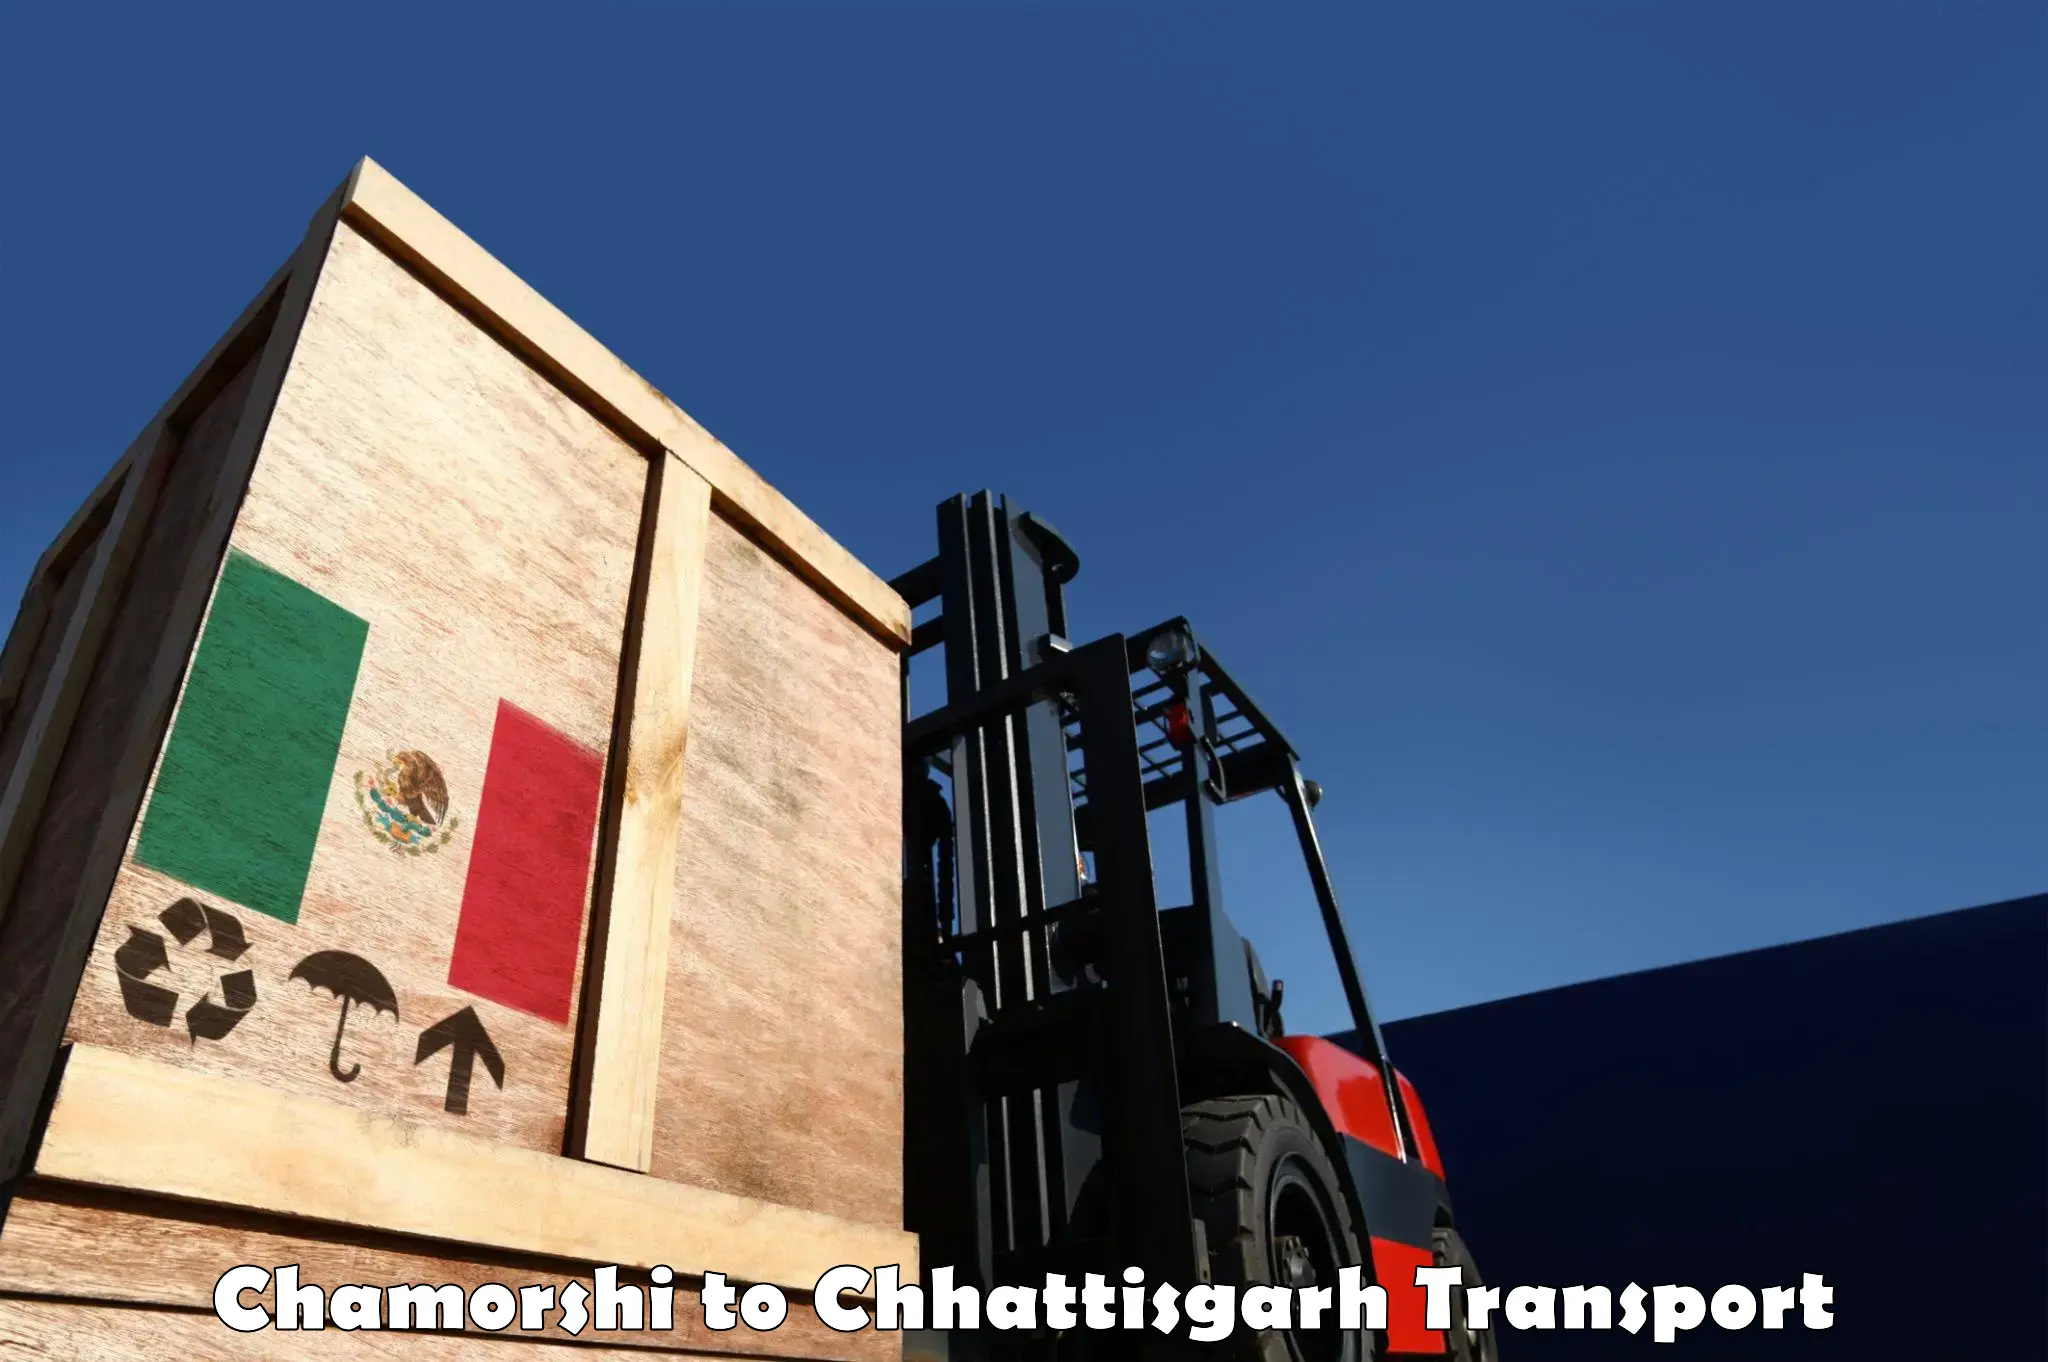 Online transport service Chamorshi to Chhattisgarh